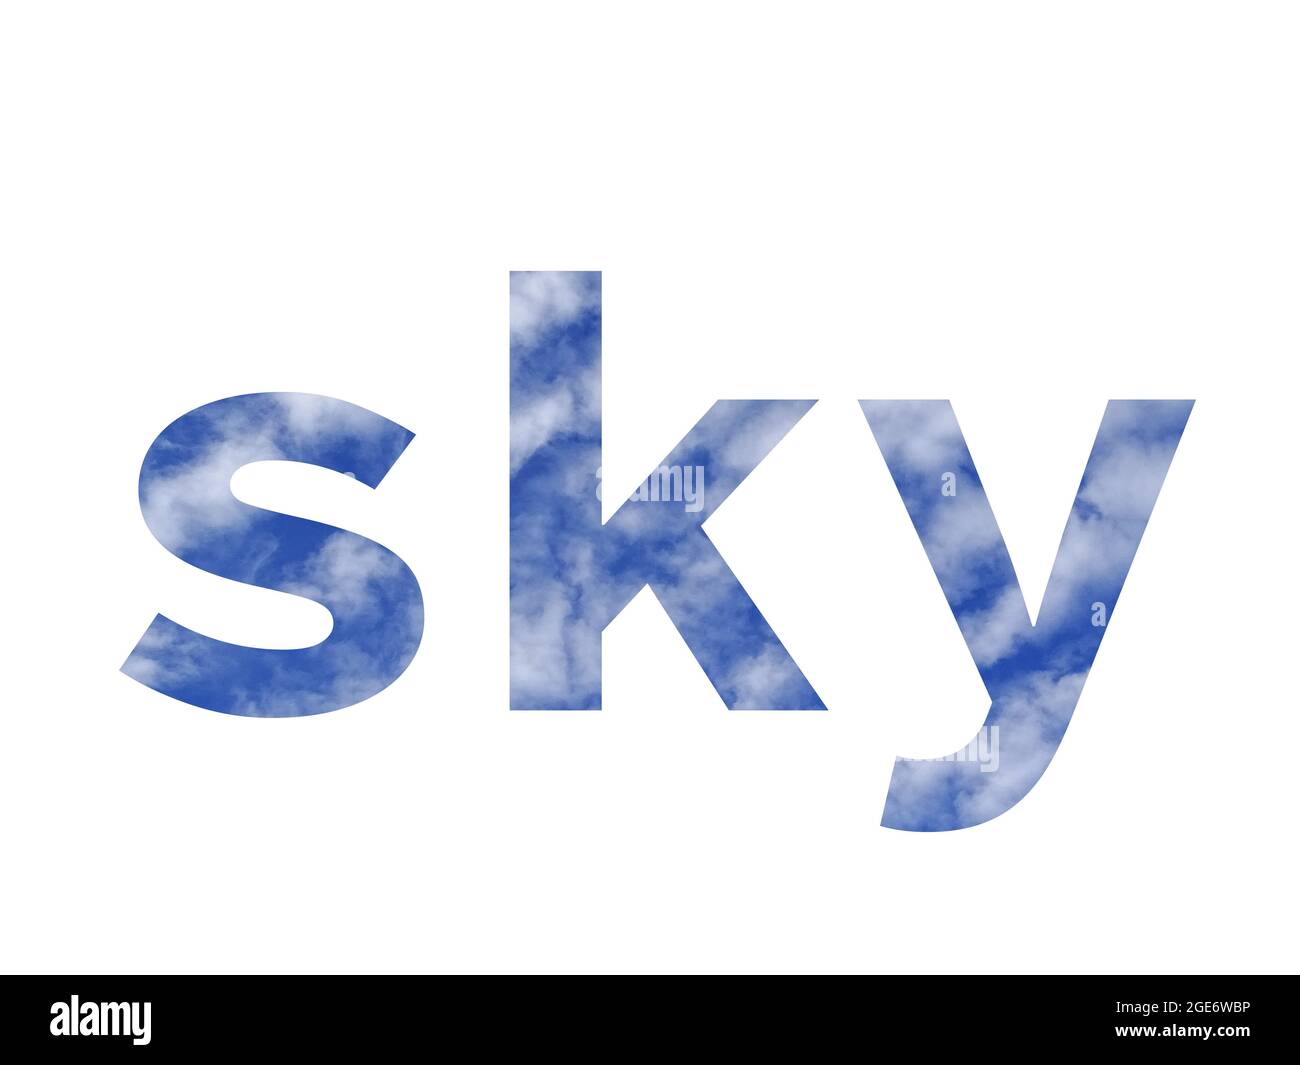 HIMMEL, Text aus Buchstaben des Alphabets mit blauem Himmel und weißen Wolken, isoliert auf weißem Hintergrund Stockfoto